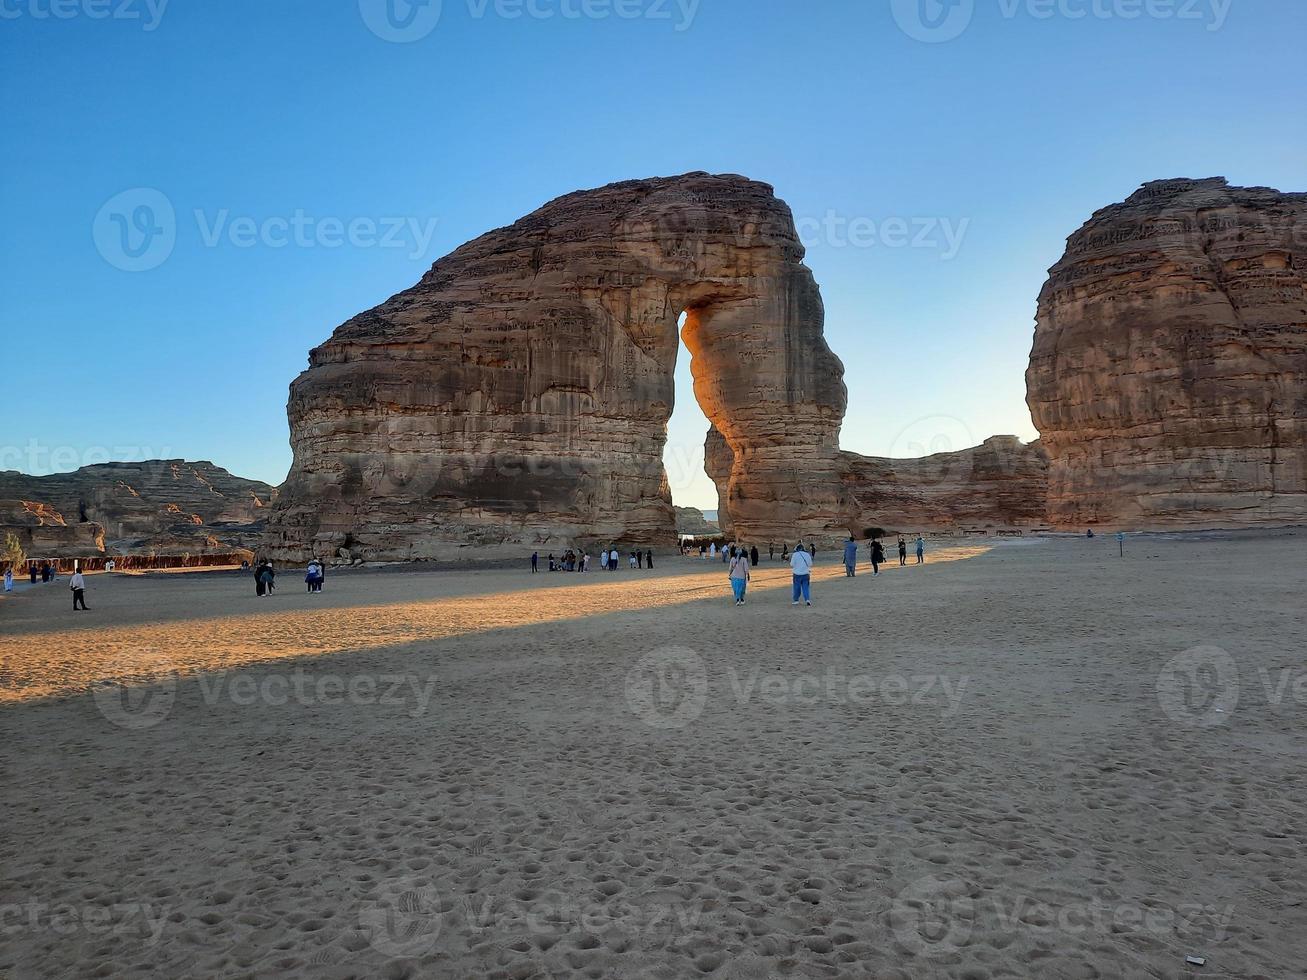 schön Abend Aussicht von Elefant Felsen im al-ula, Saudi Arabien. Touristen Herde im groß Zahlen zu sehen Elefant Felsen. foto